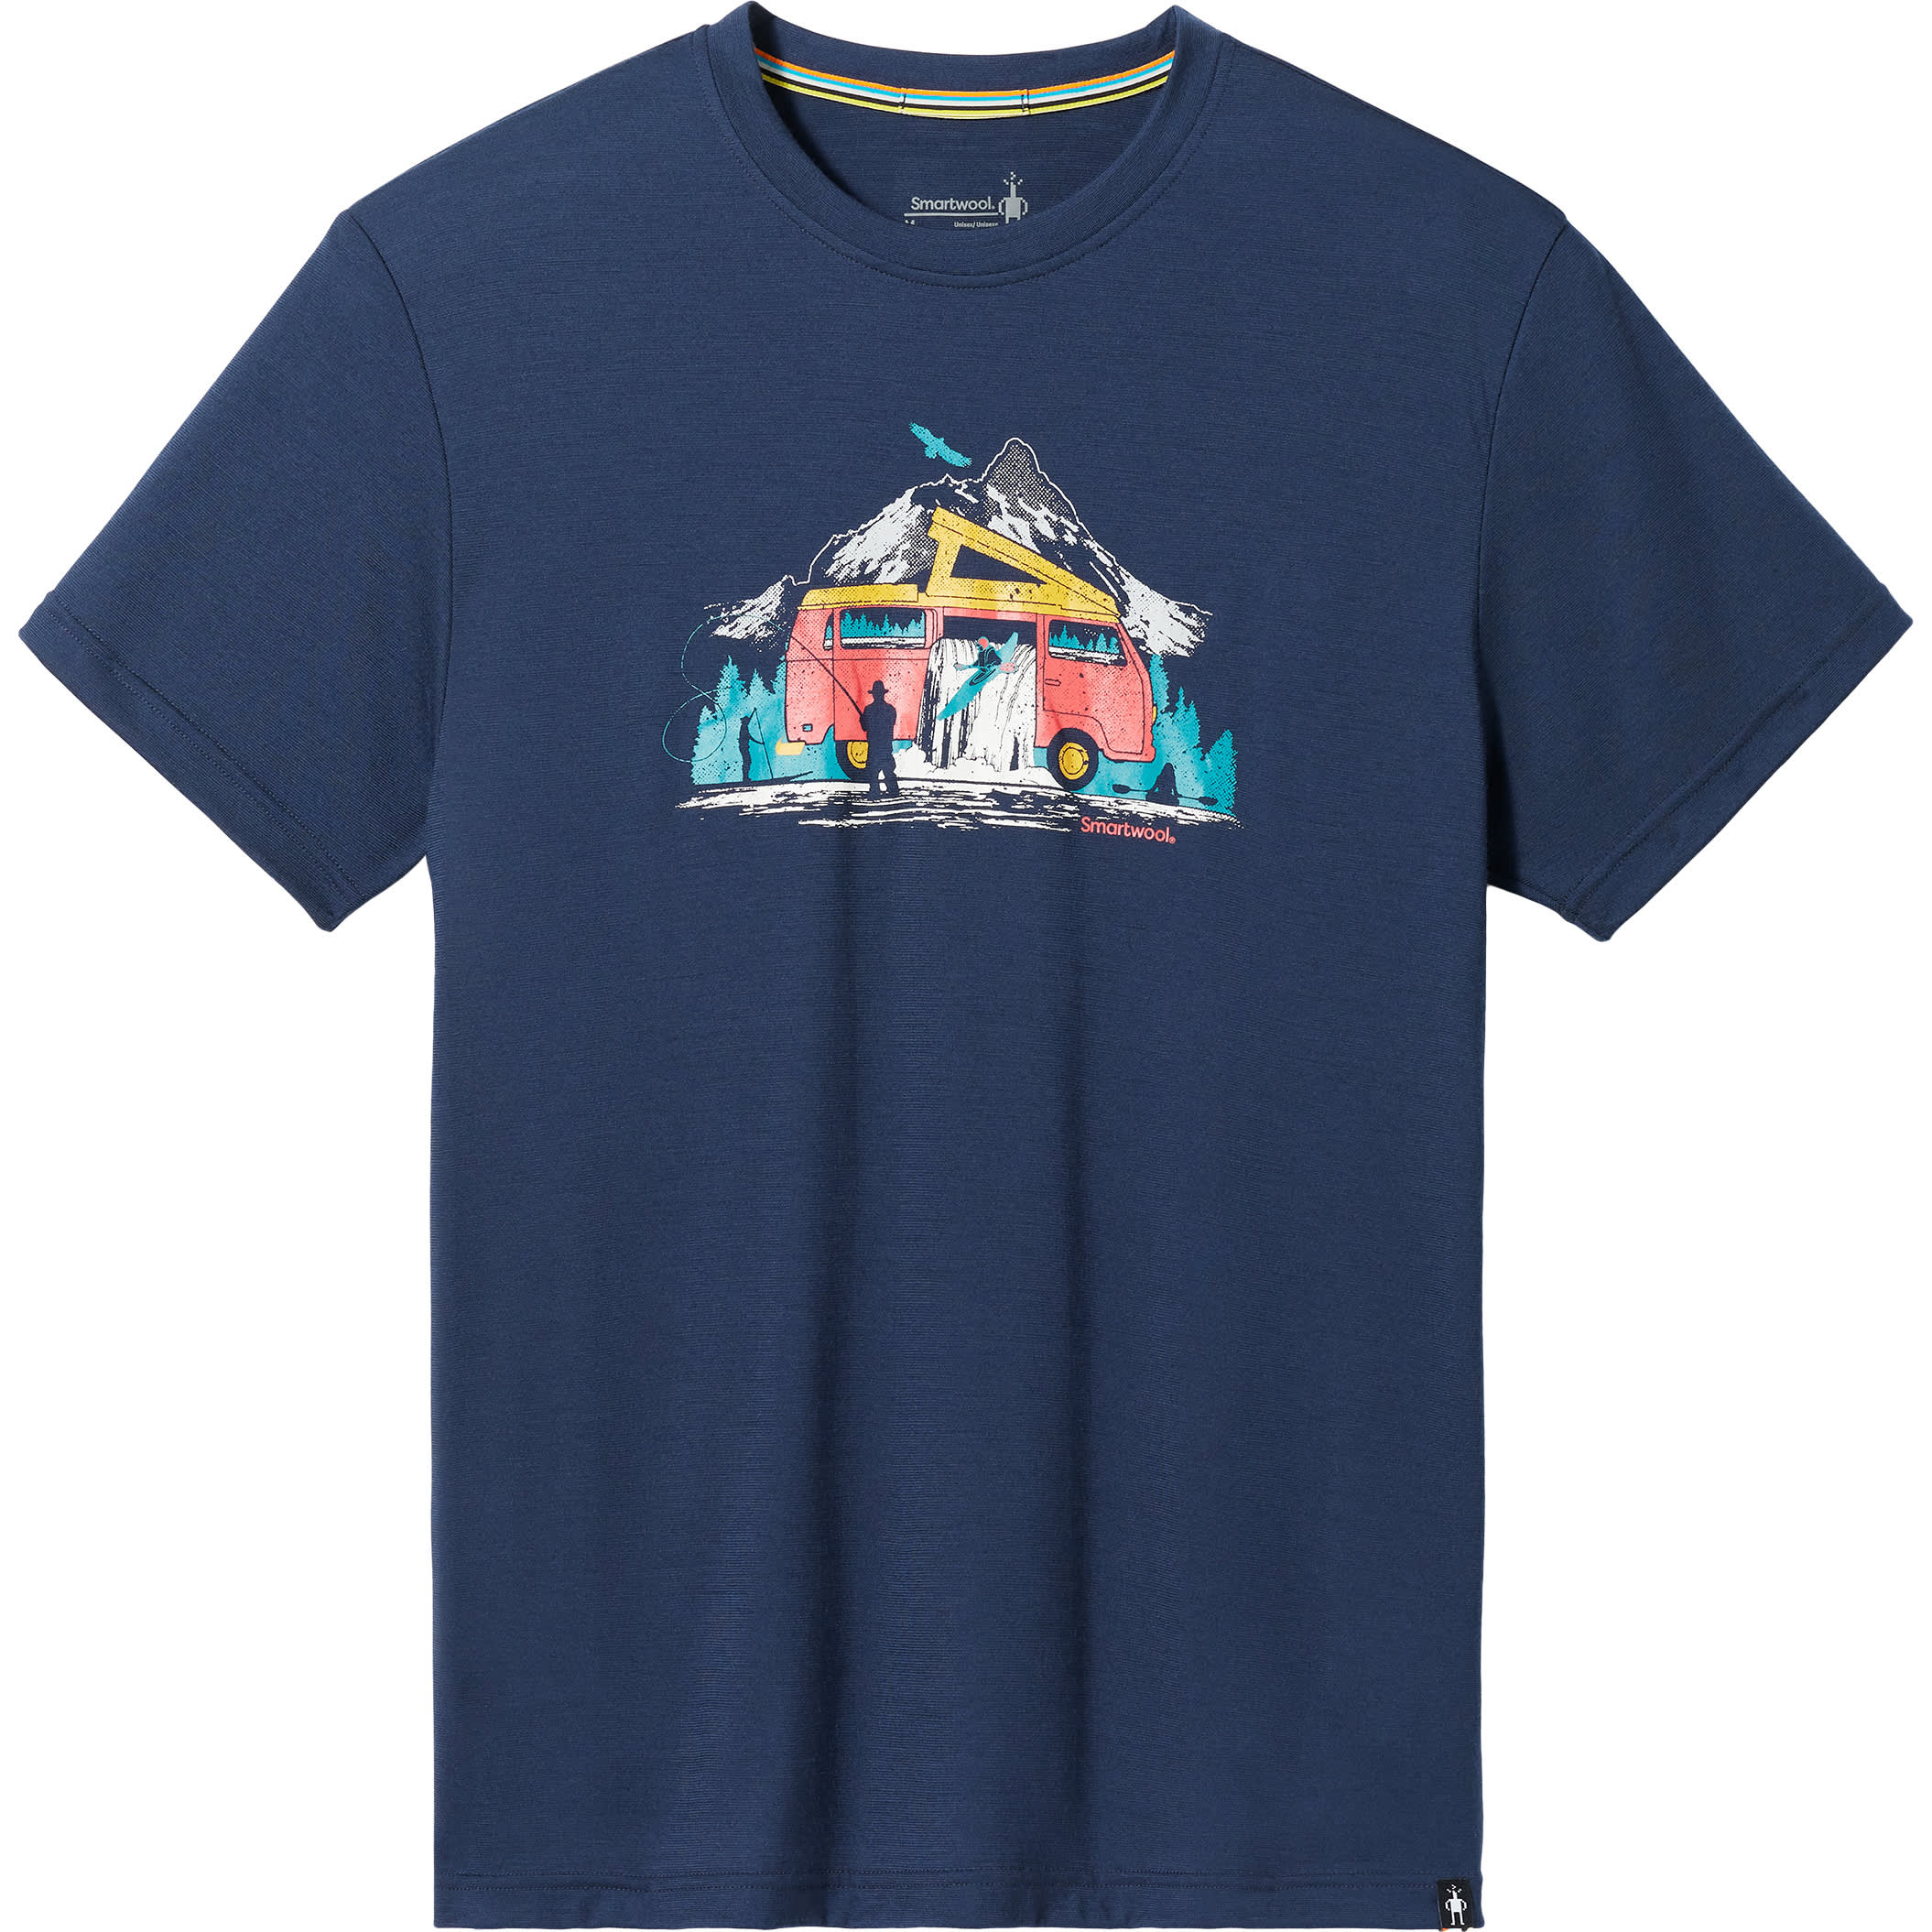 Smartwool® Men’s River Van Graphic Short-Sleeve T-Shirt